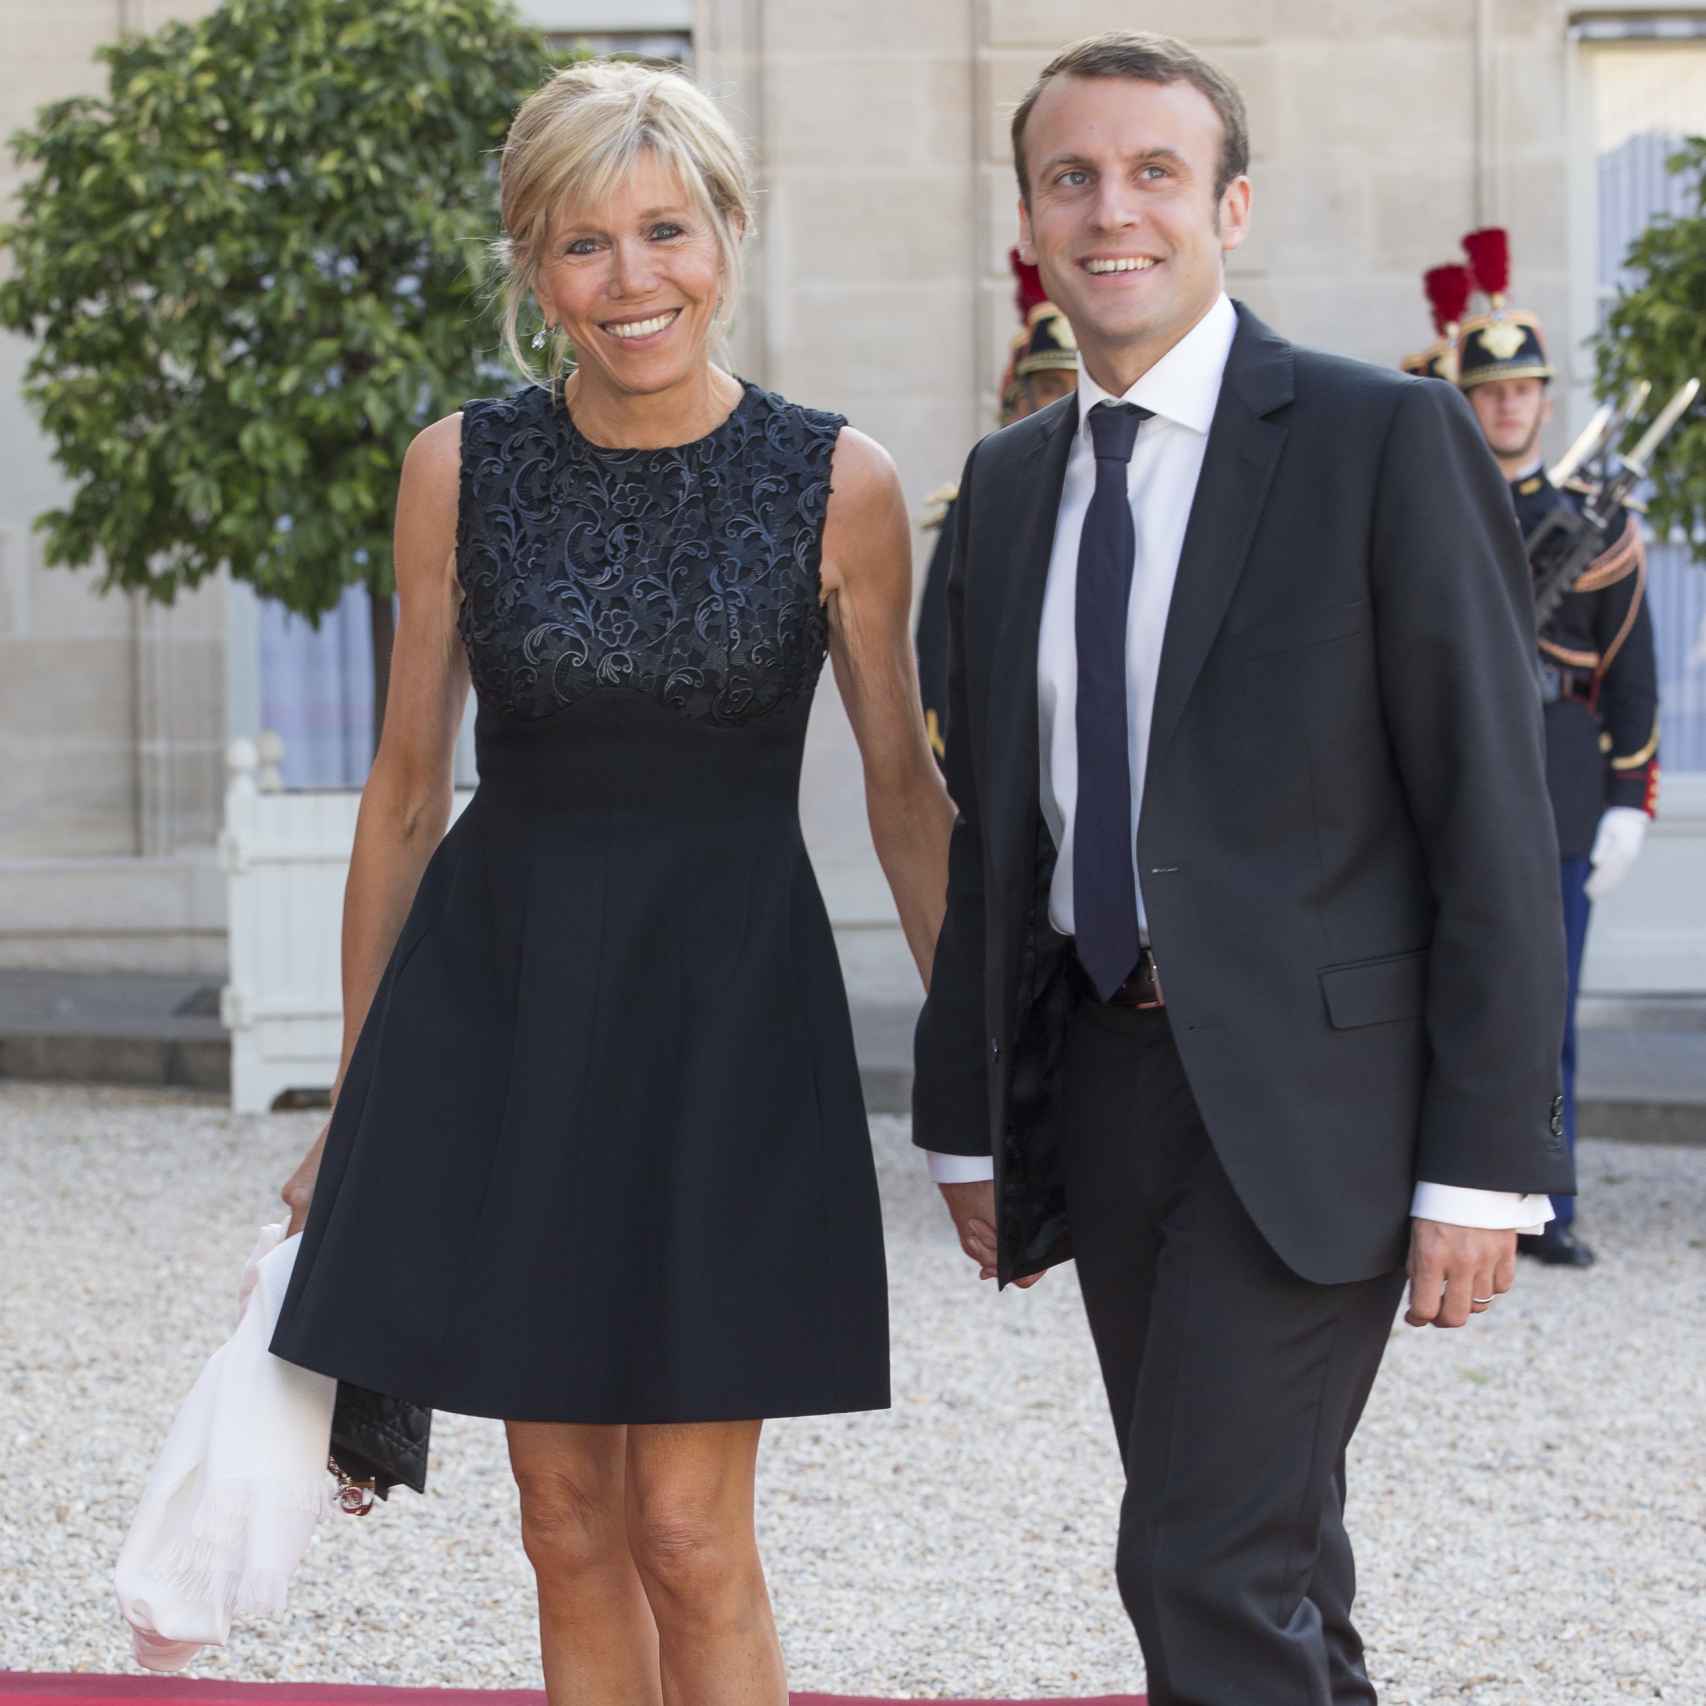 La pareja Macron en un acto oficial